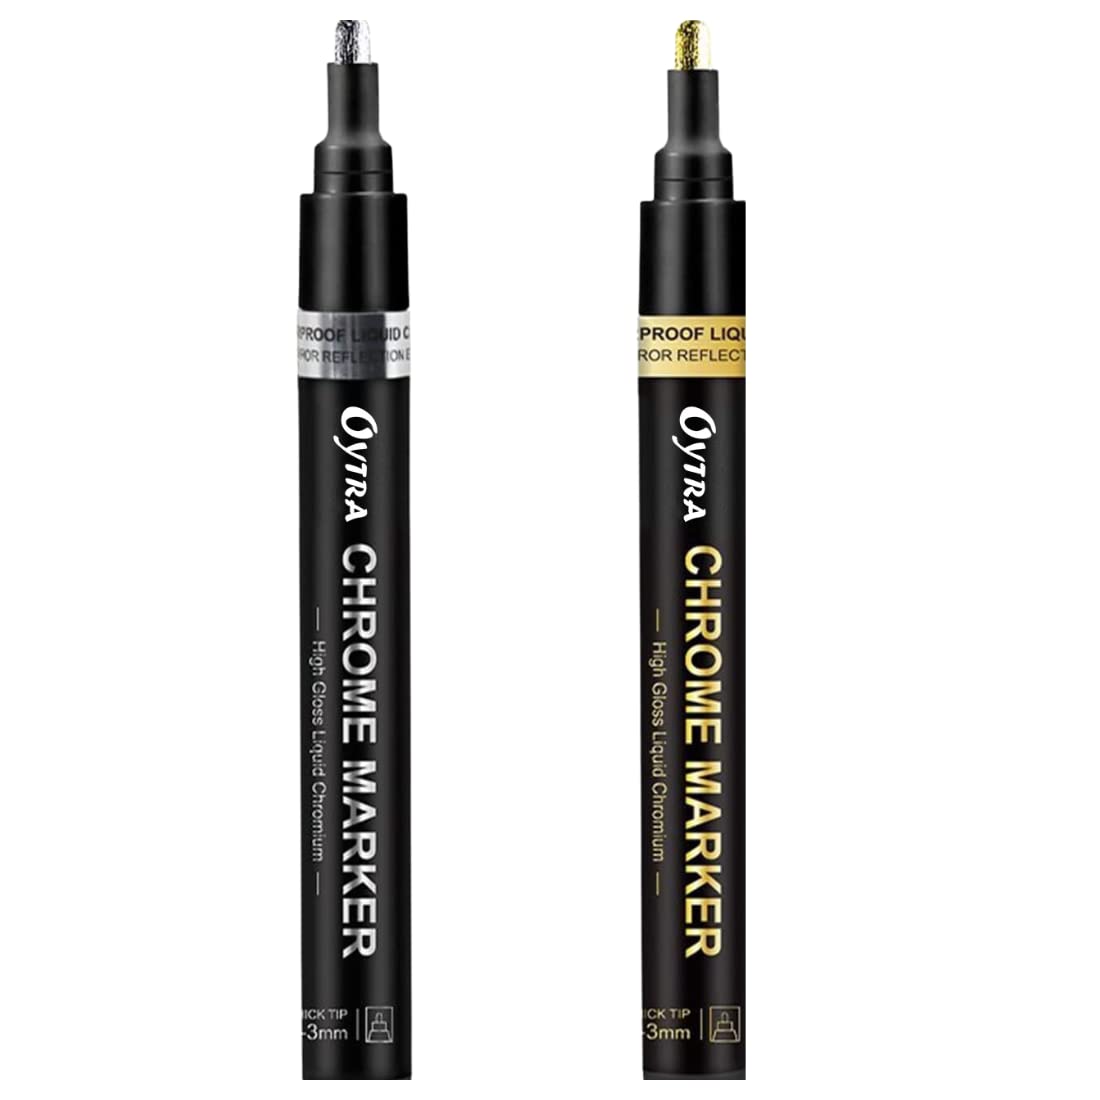 Chrome Marker Set 2 Pcs/Set, Silver & Golden Pens, Tip 2-3mm - Oytra